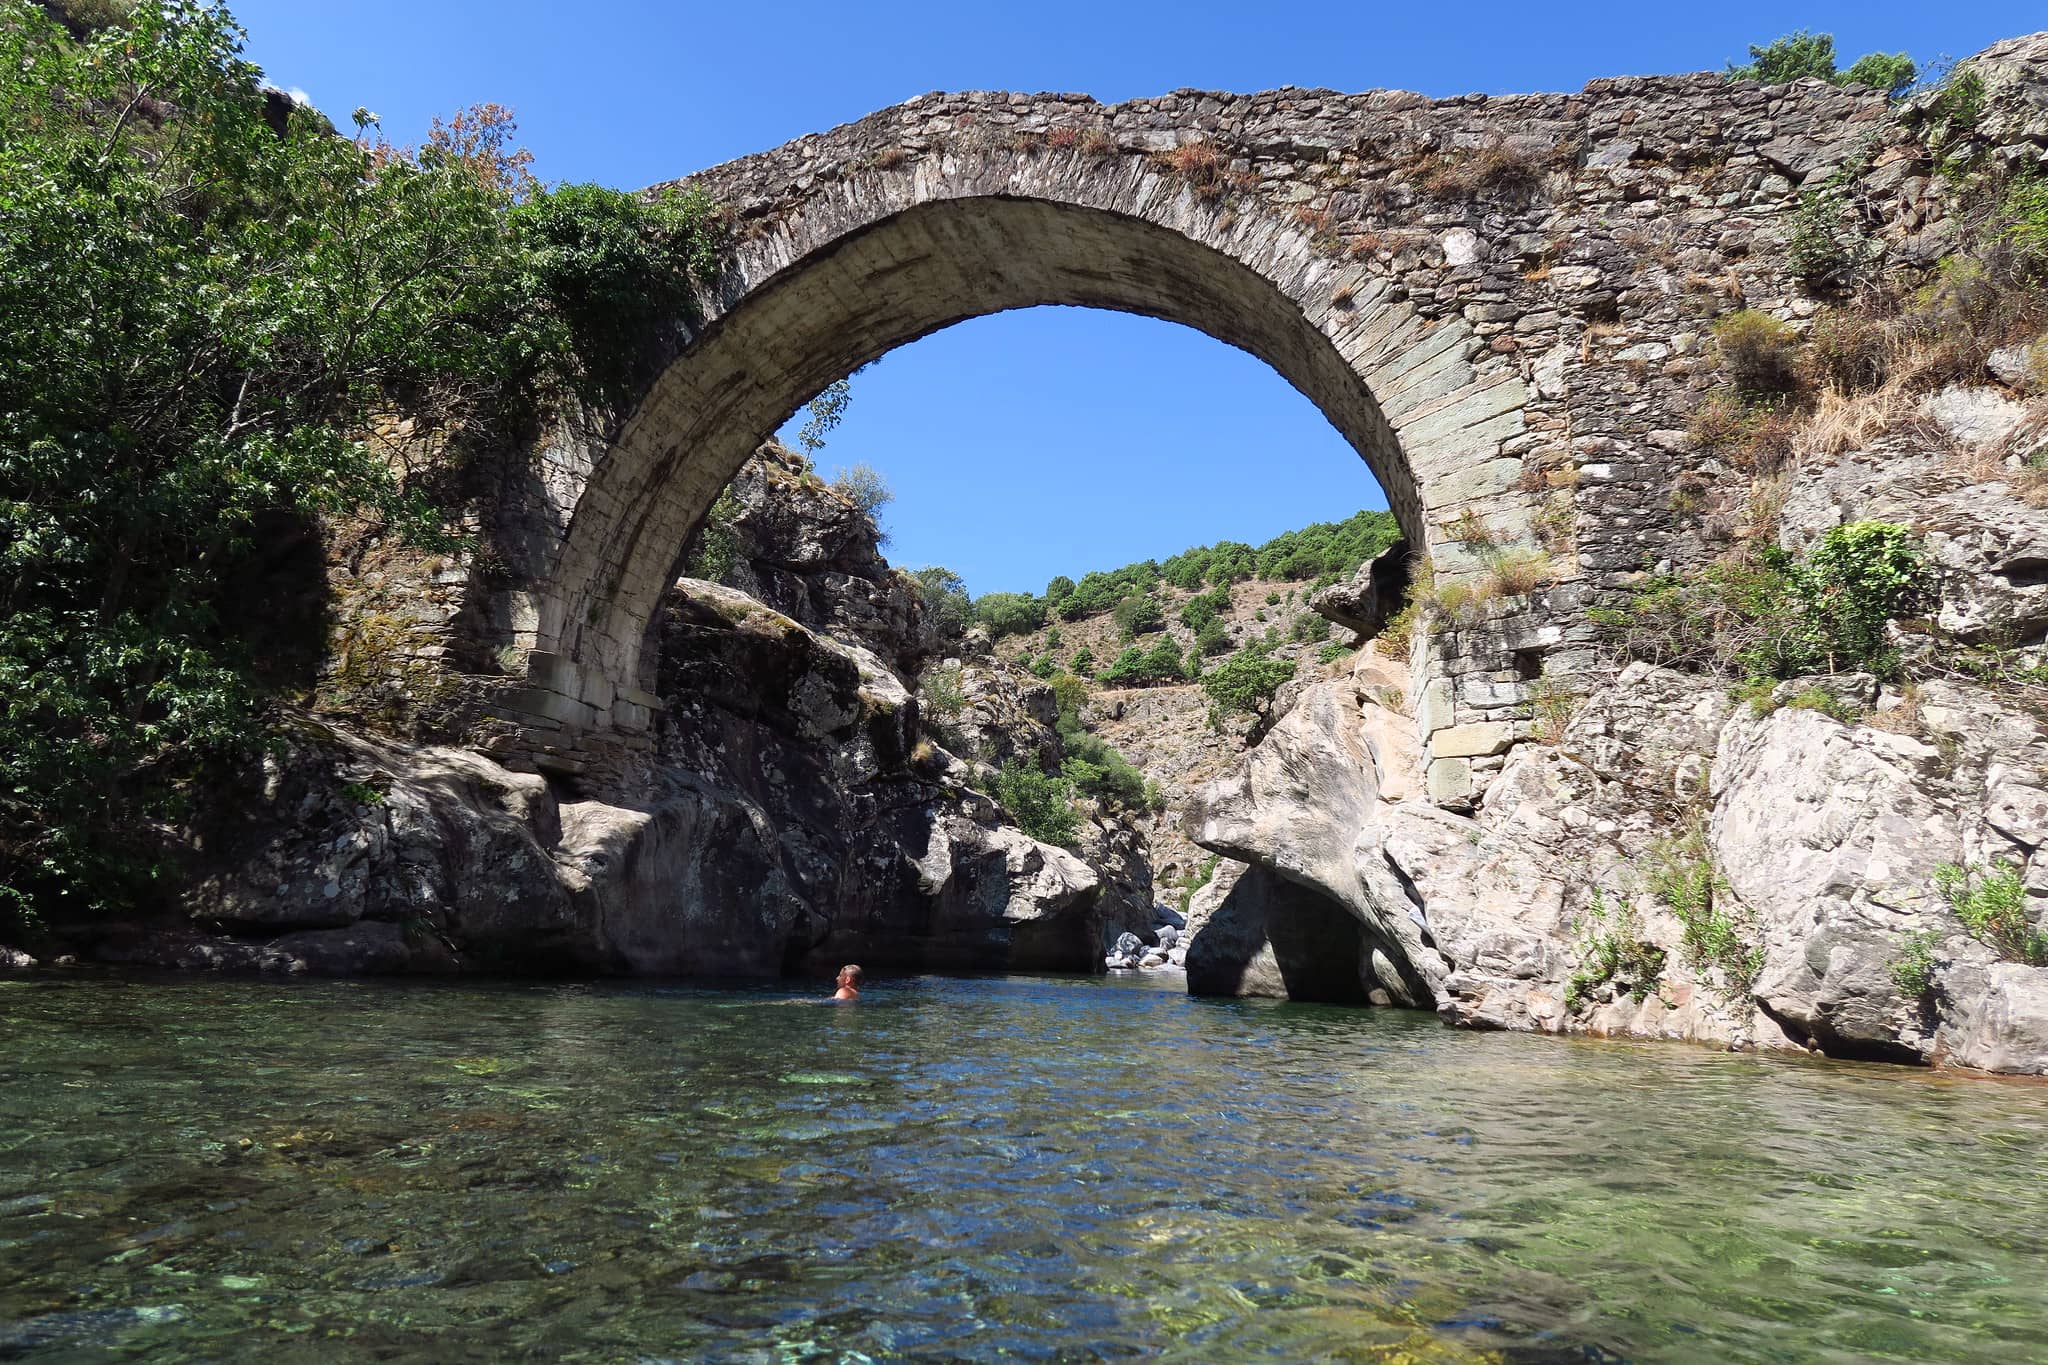 Photo du pont génois et les roches encadrant la piscine naturelle émeraude. Arche en pierres sous forme de voûte. Présence d'une silhouette humaine dans la piscine naturelle.